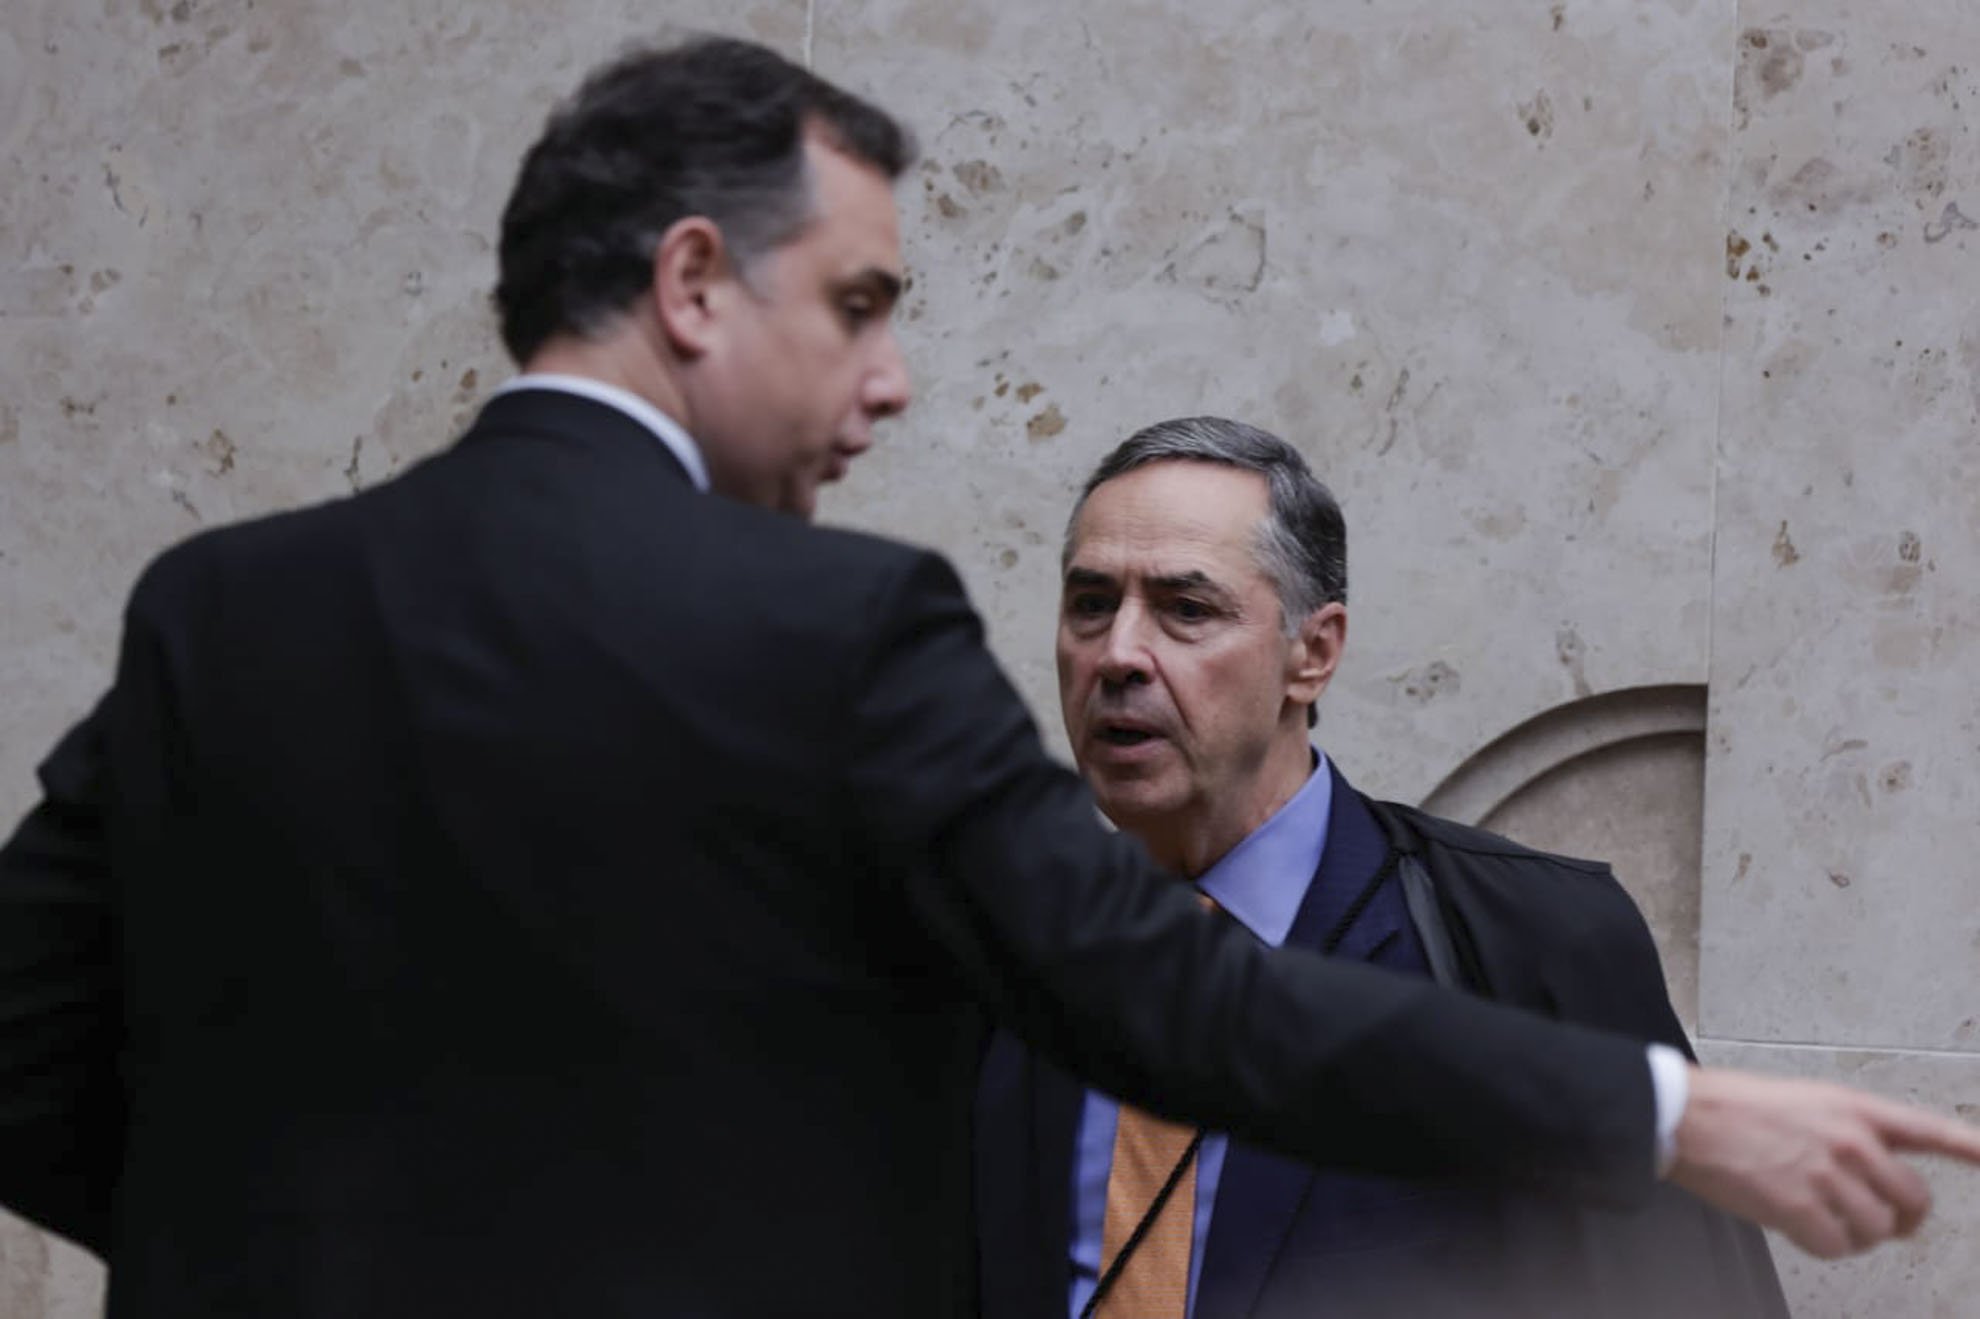 MInistro do STF Luis Roberto Barroso e o presidente do Senado Federal Rodrigo Pacheco em sessão STF - Metrópoles